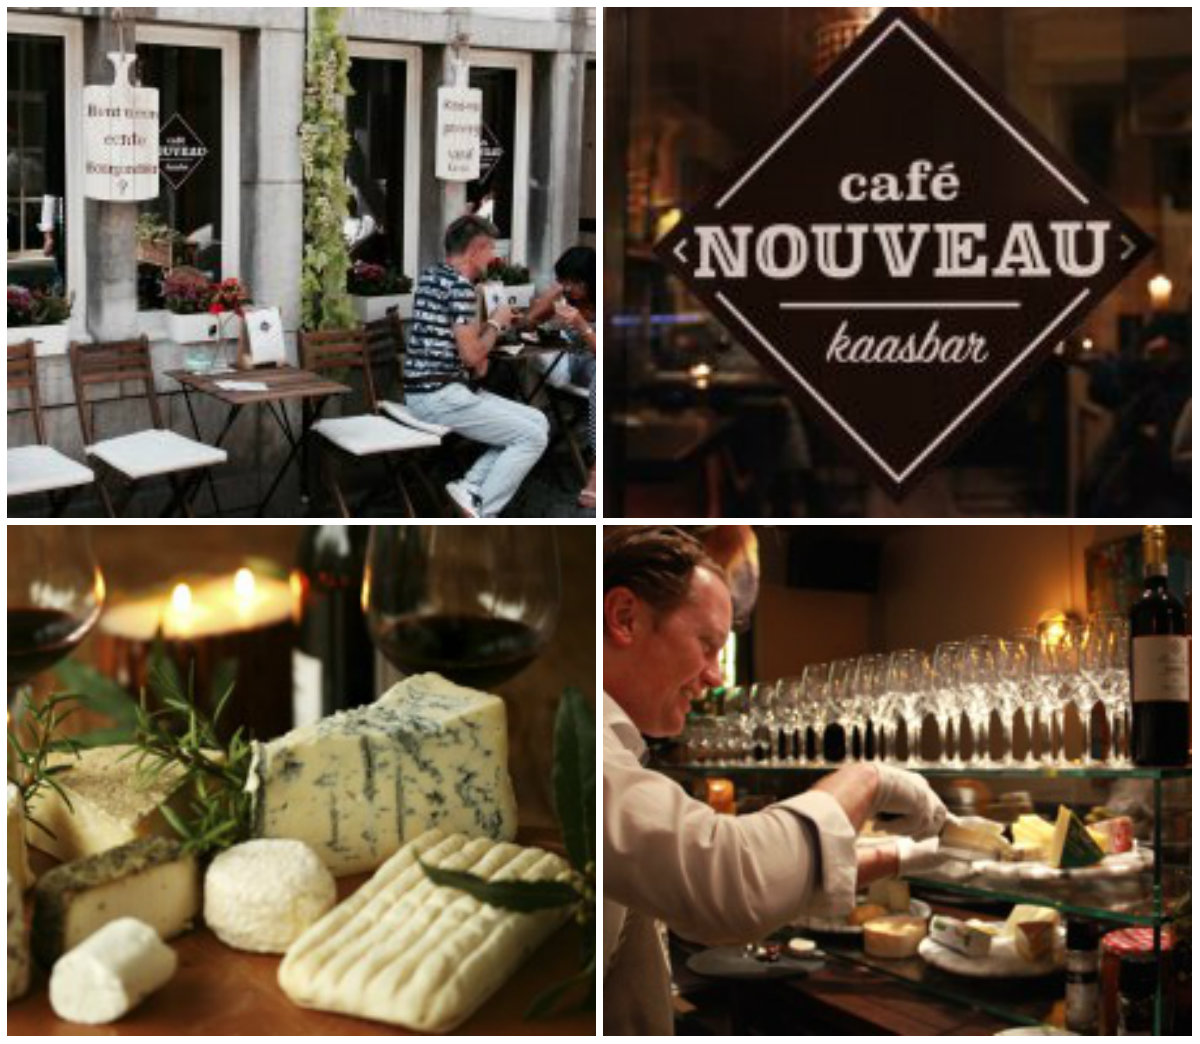 Café Nouveau - Franse restaurants in Maastricht